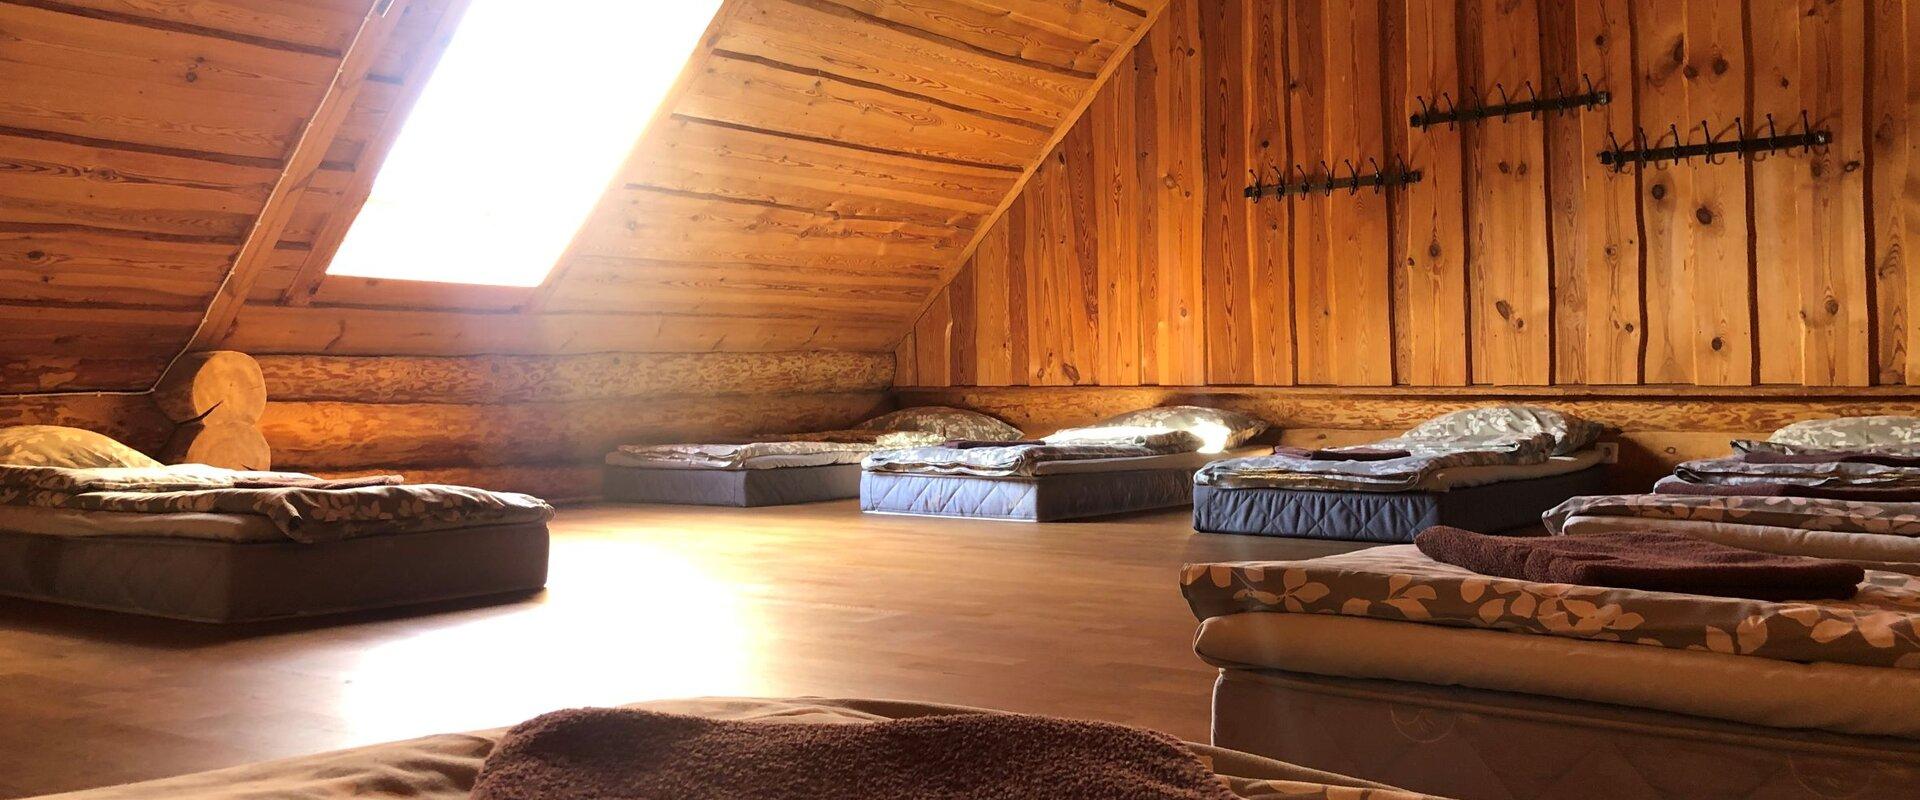 Sauna und Unterkunft in Mittelestland